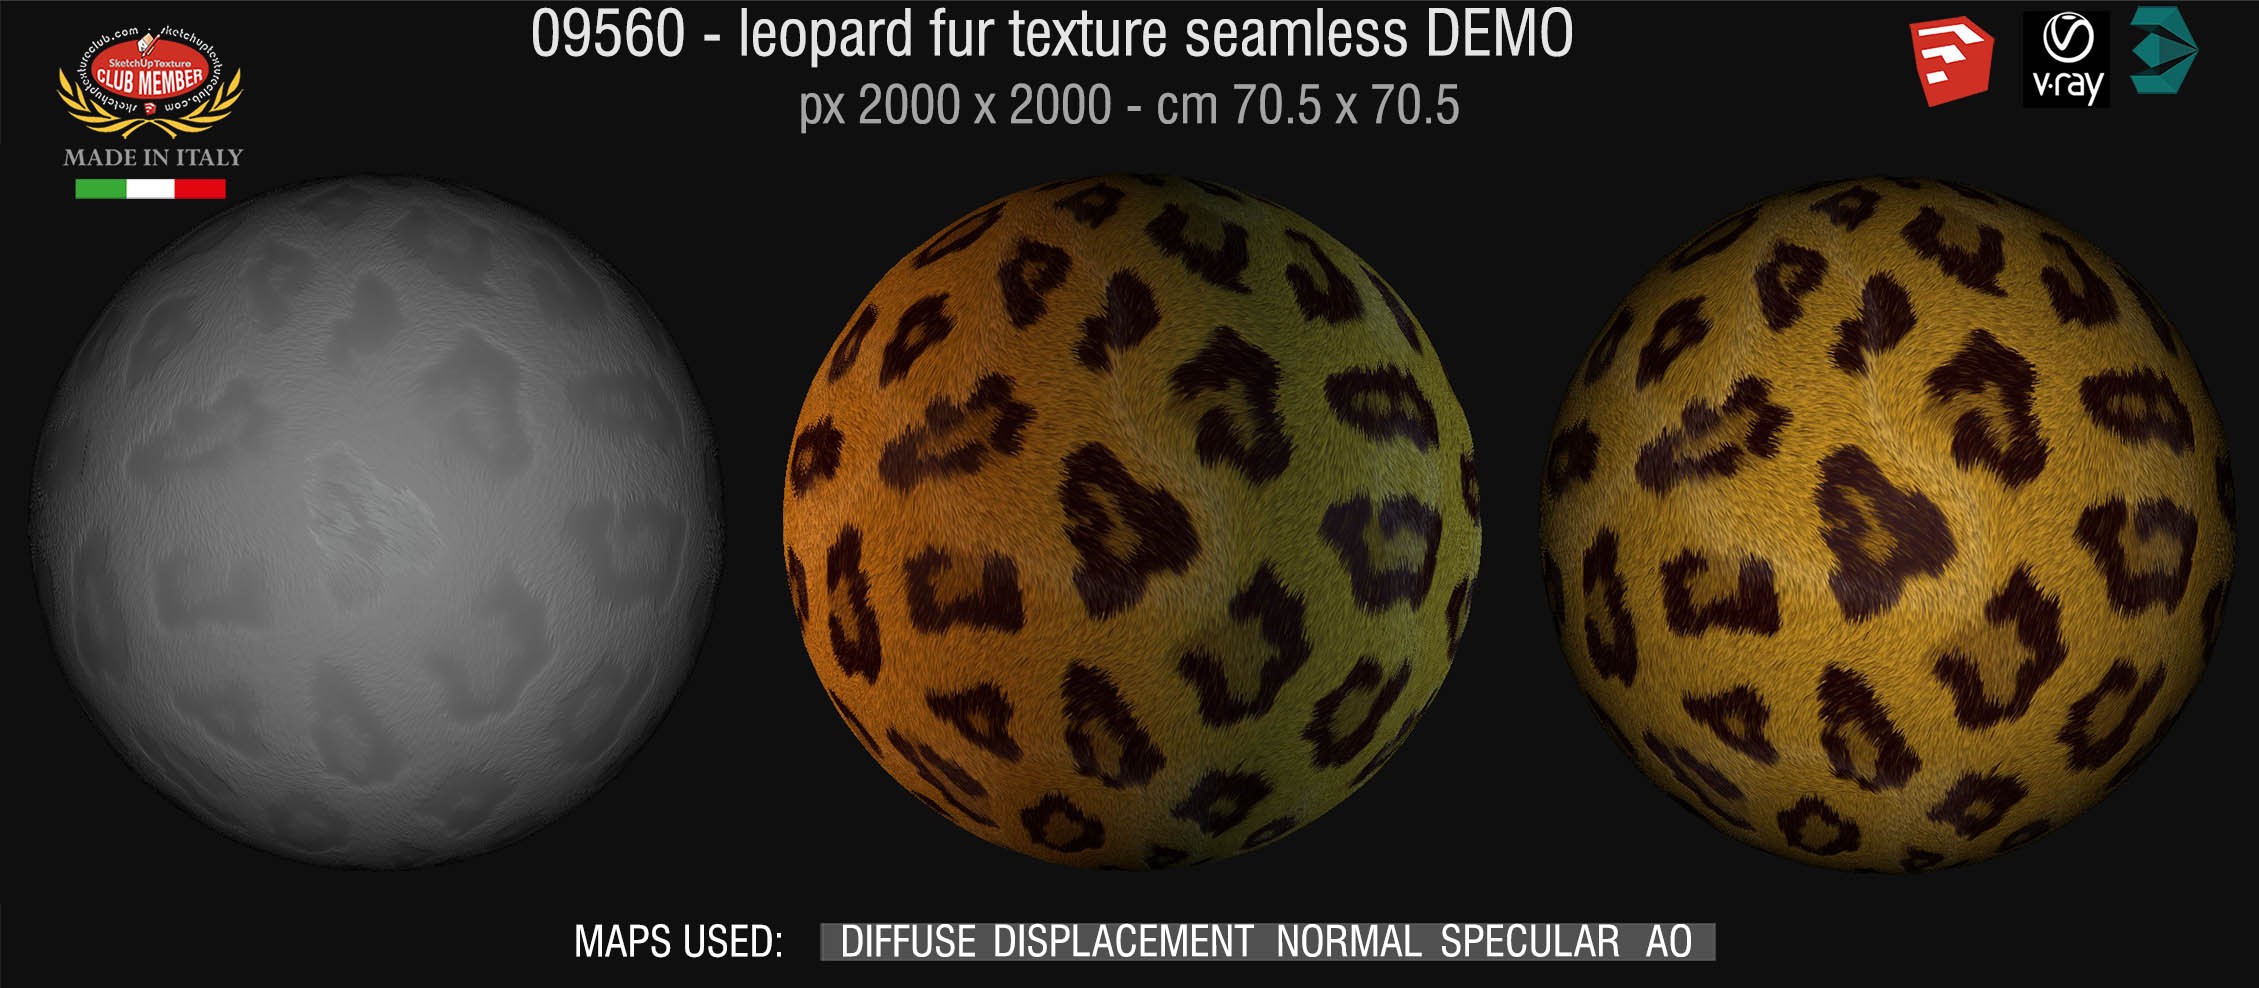 09560 HR Leopard fake fur texture + maps DEMO